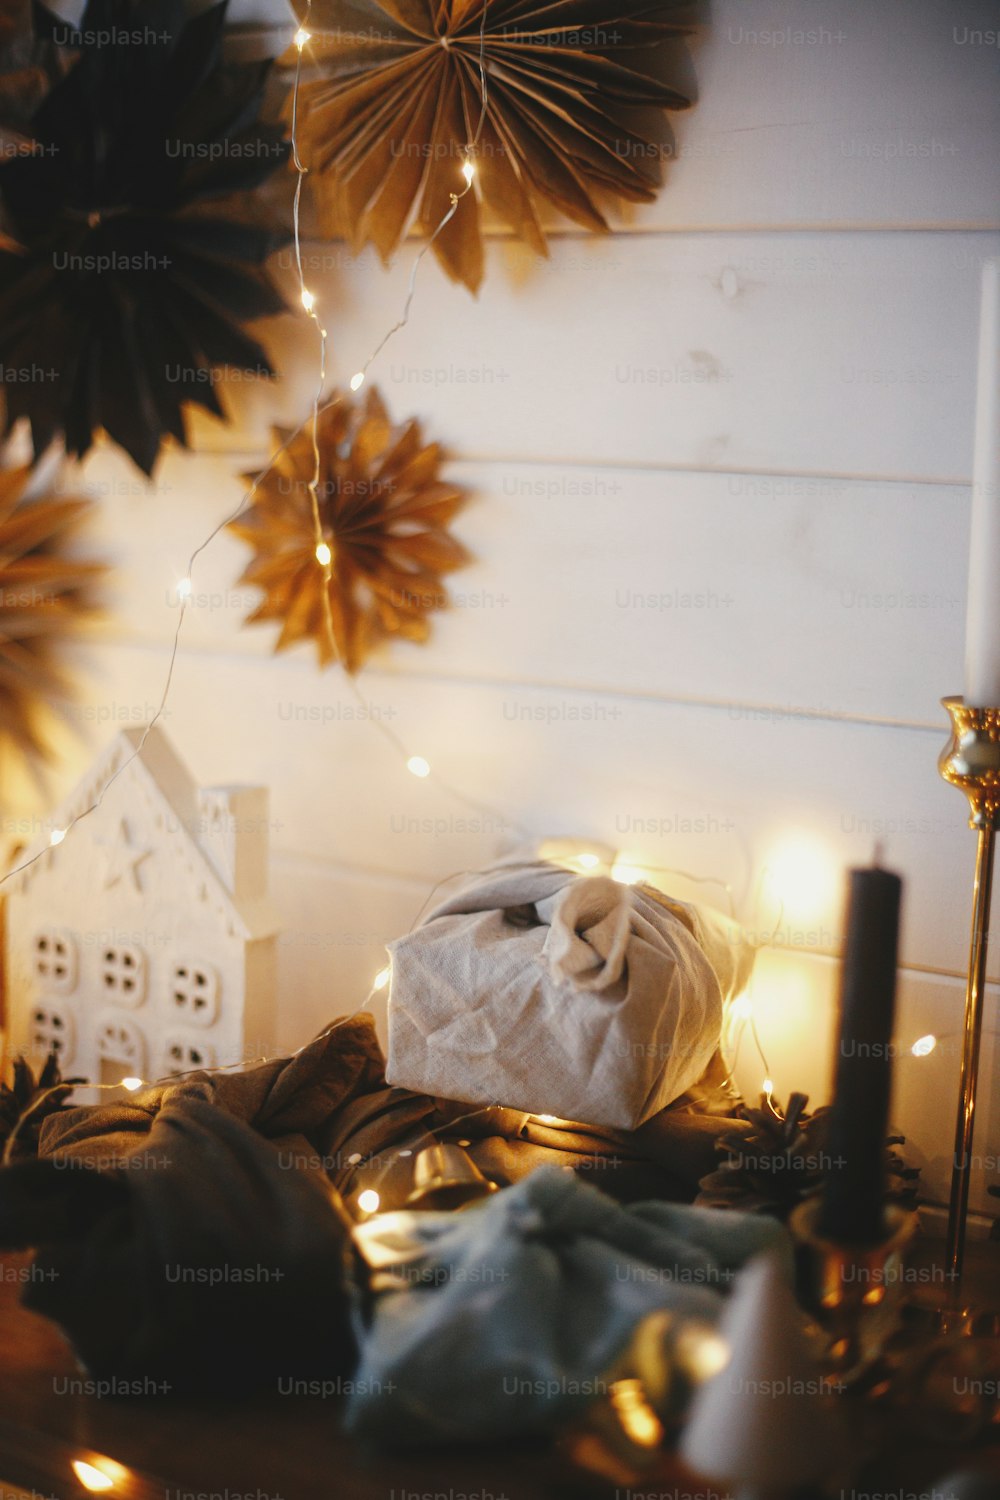 ¡Feliz Navidad! Elegantes regalos de navidad sin plástico en estante de madera sobre fondo de casita, árboles, estrellas de papel y bokeh de luces doradas navideñas. Ambiente festivo escandinavo